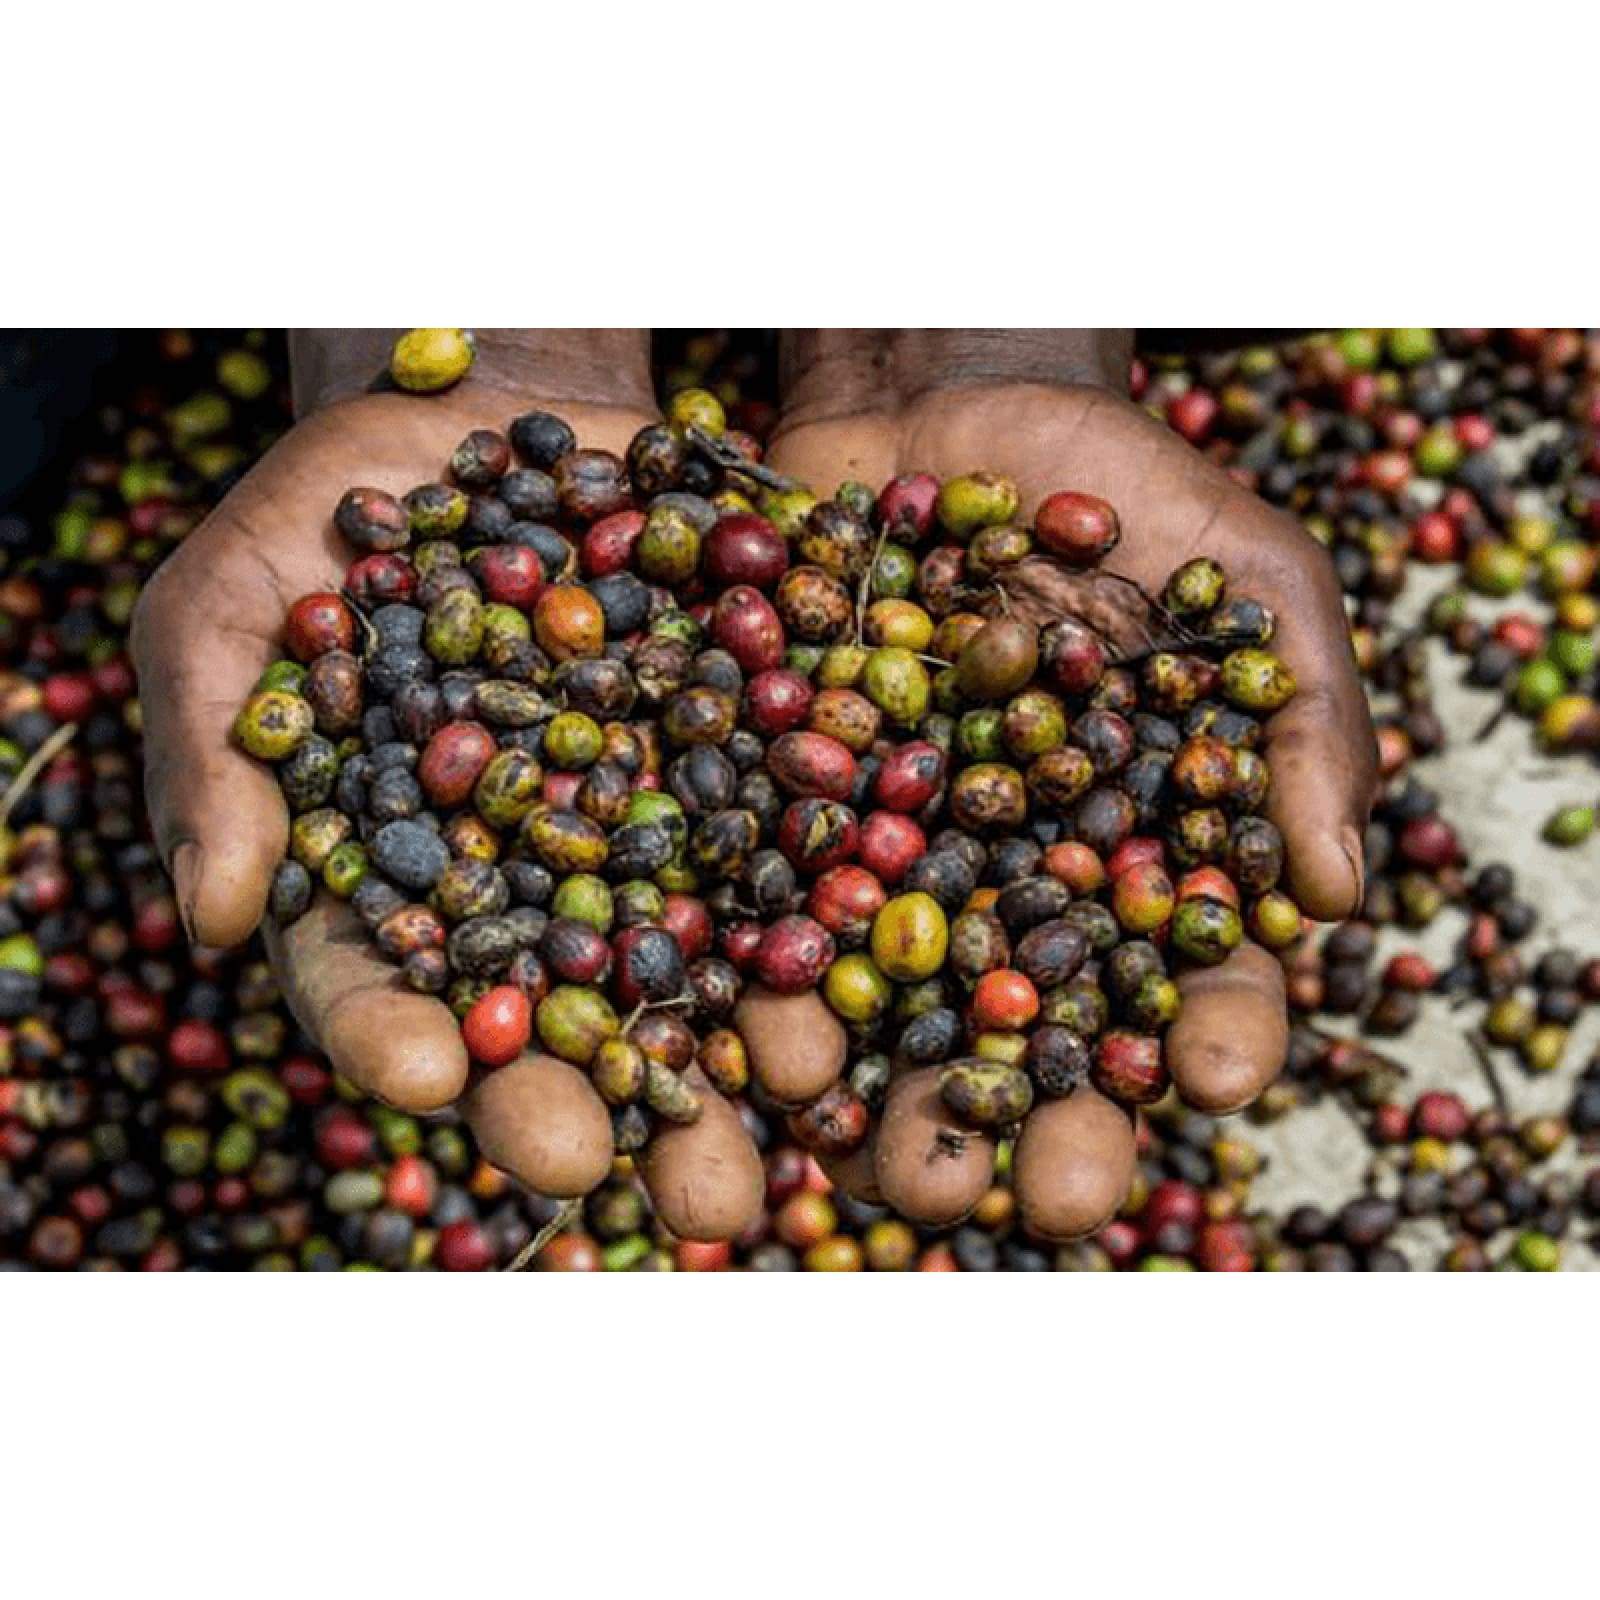 Uganda Single-Origin Sipi Falls Coffee - Coffee - $15.25